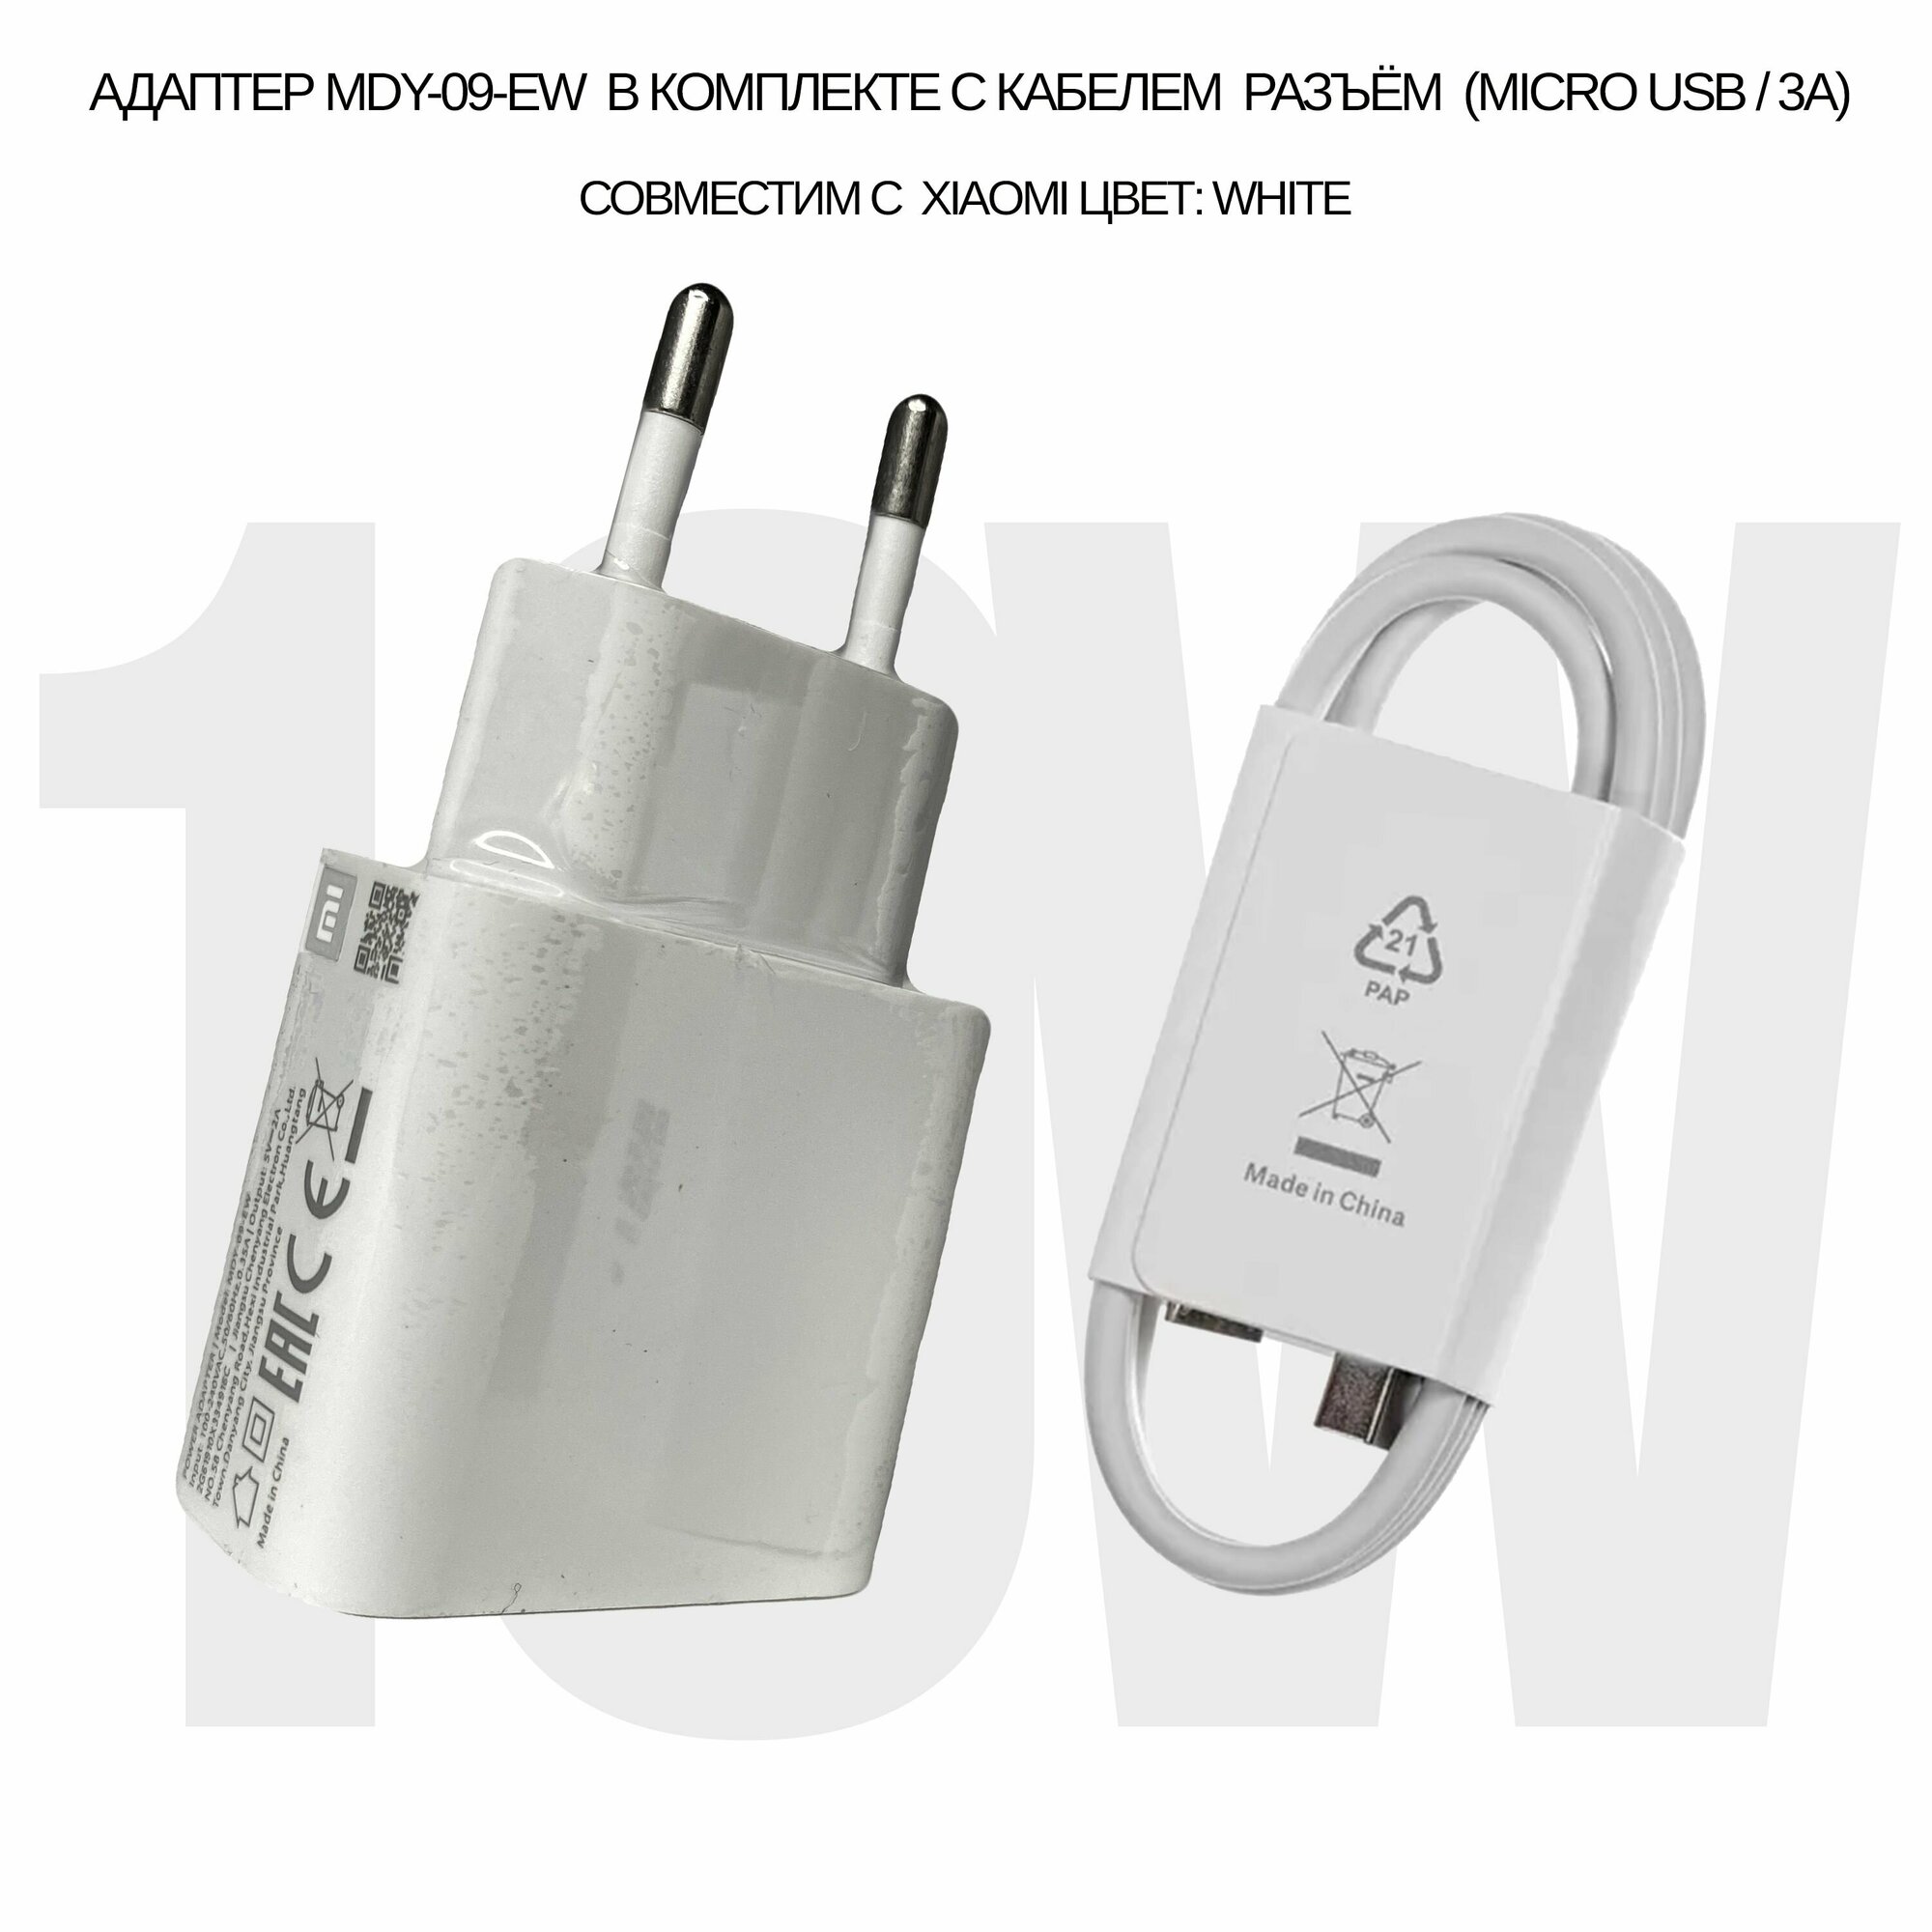 Сетевой адаптер 10W (MDY-09-EW) в комплекте с кабелем 3A/micro USB разъём совместим с Xiaomi с USB входом (цвет: White)